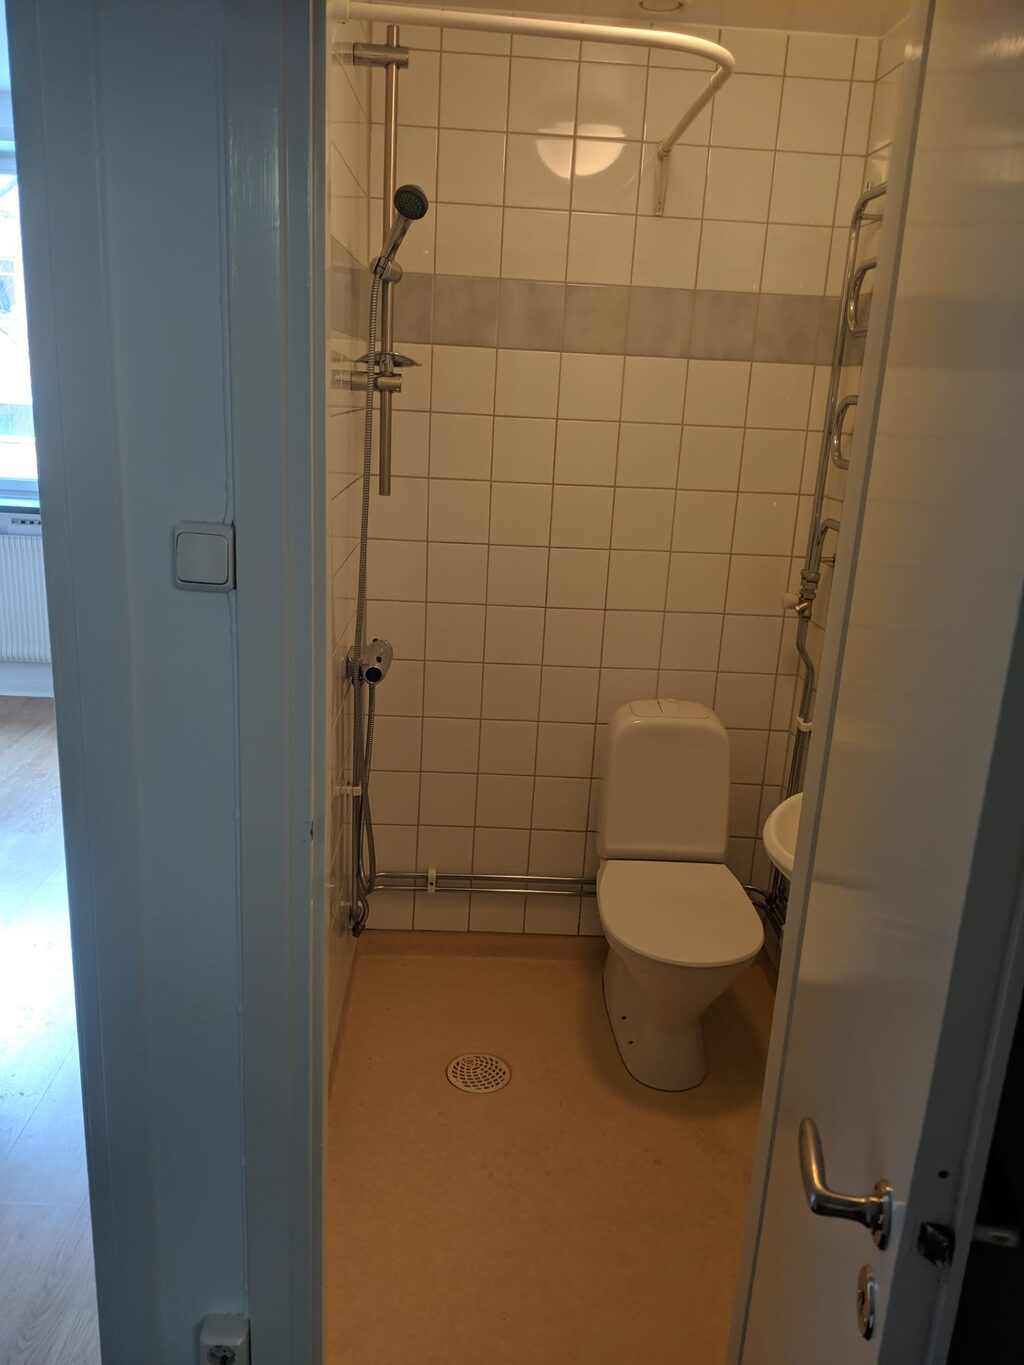 Lägenhetsbyte - Gotlandsgatan 52